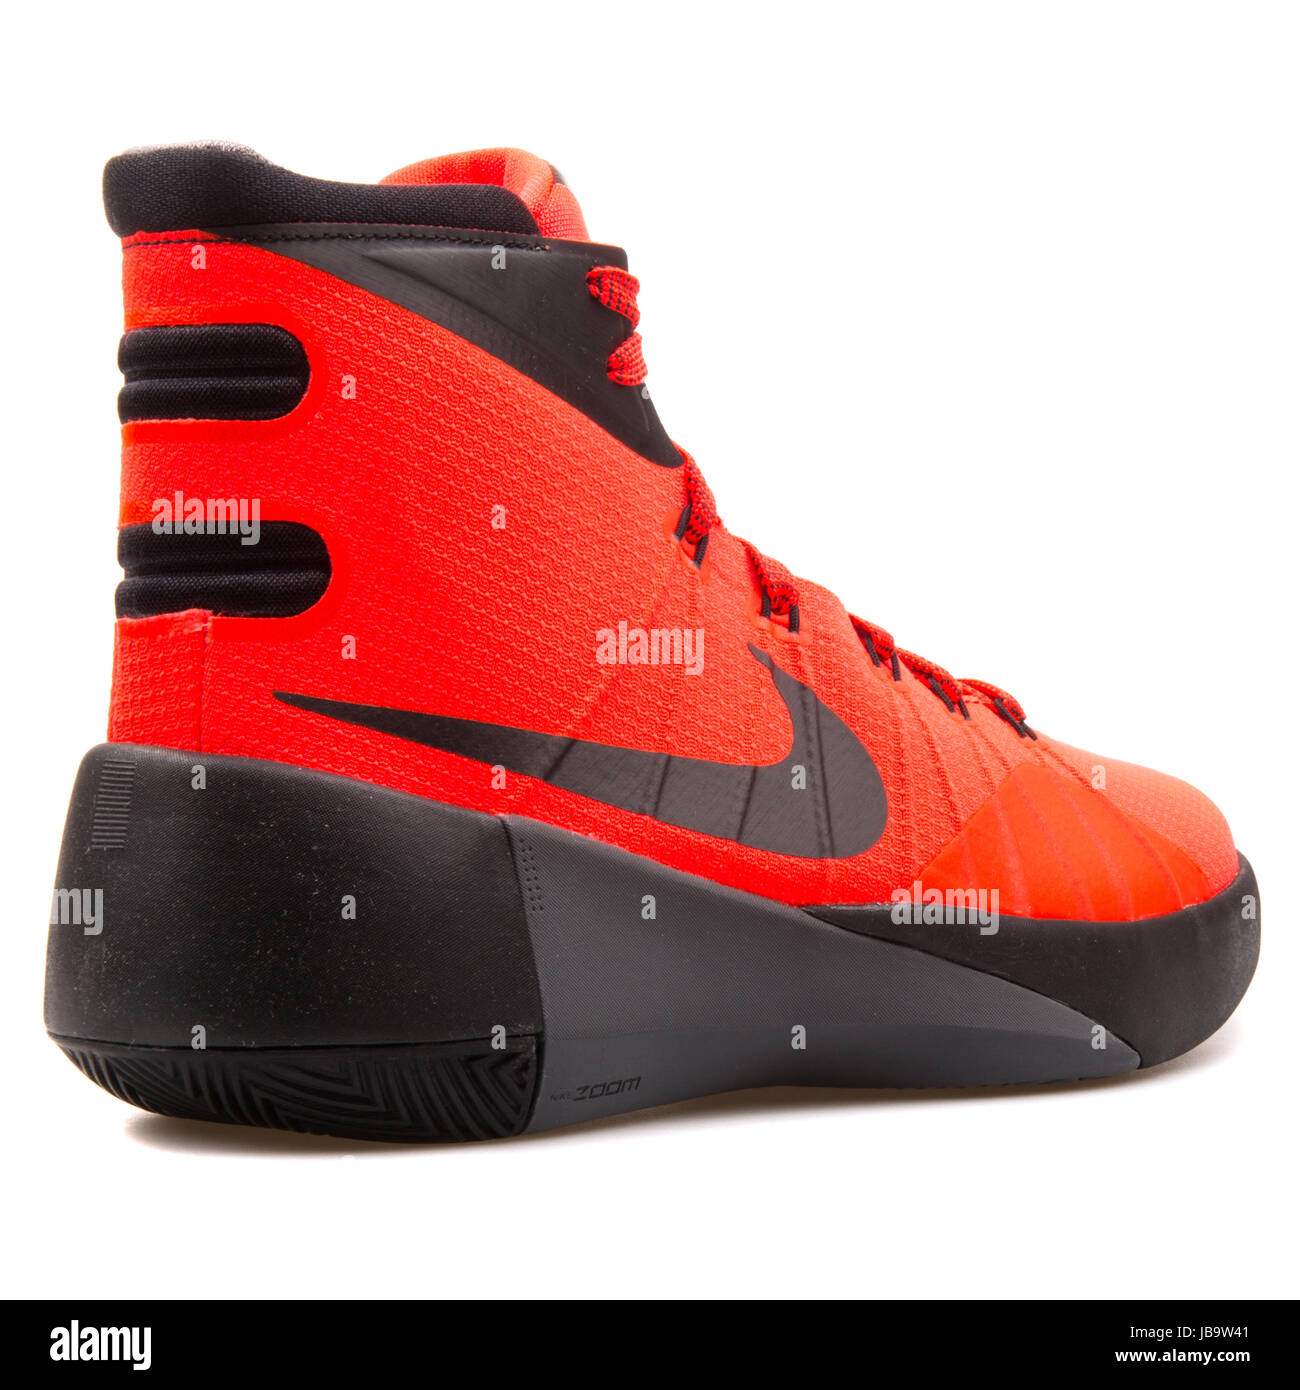 Nike Hyperdunk 2015 (GS) leuchtend roten und schwarzen Jugend  Basketball-Schuhe - 759974-600 Stockfotografie - Alamy